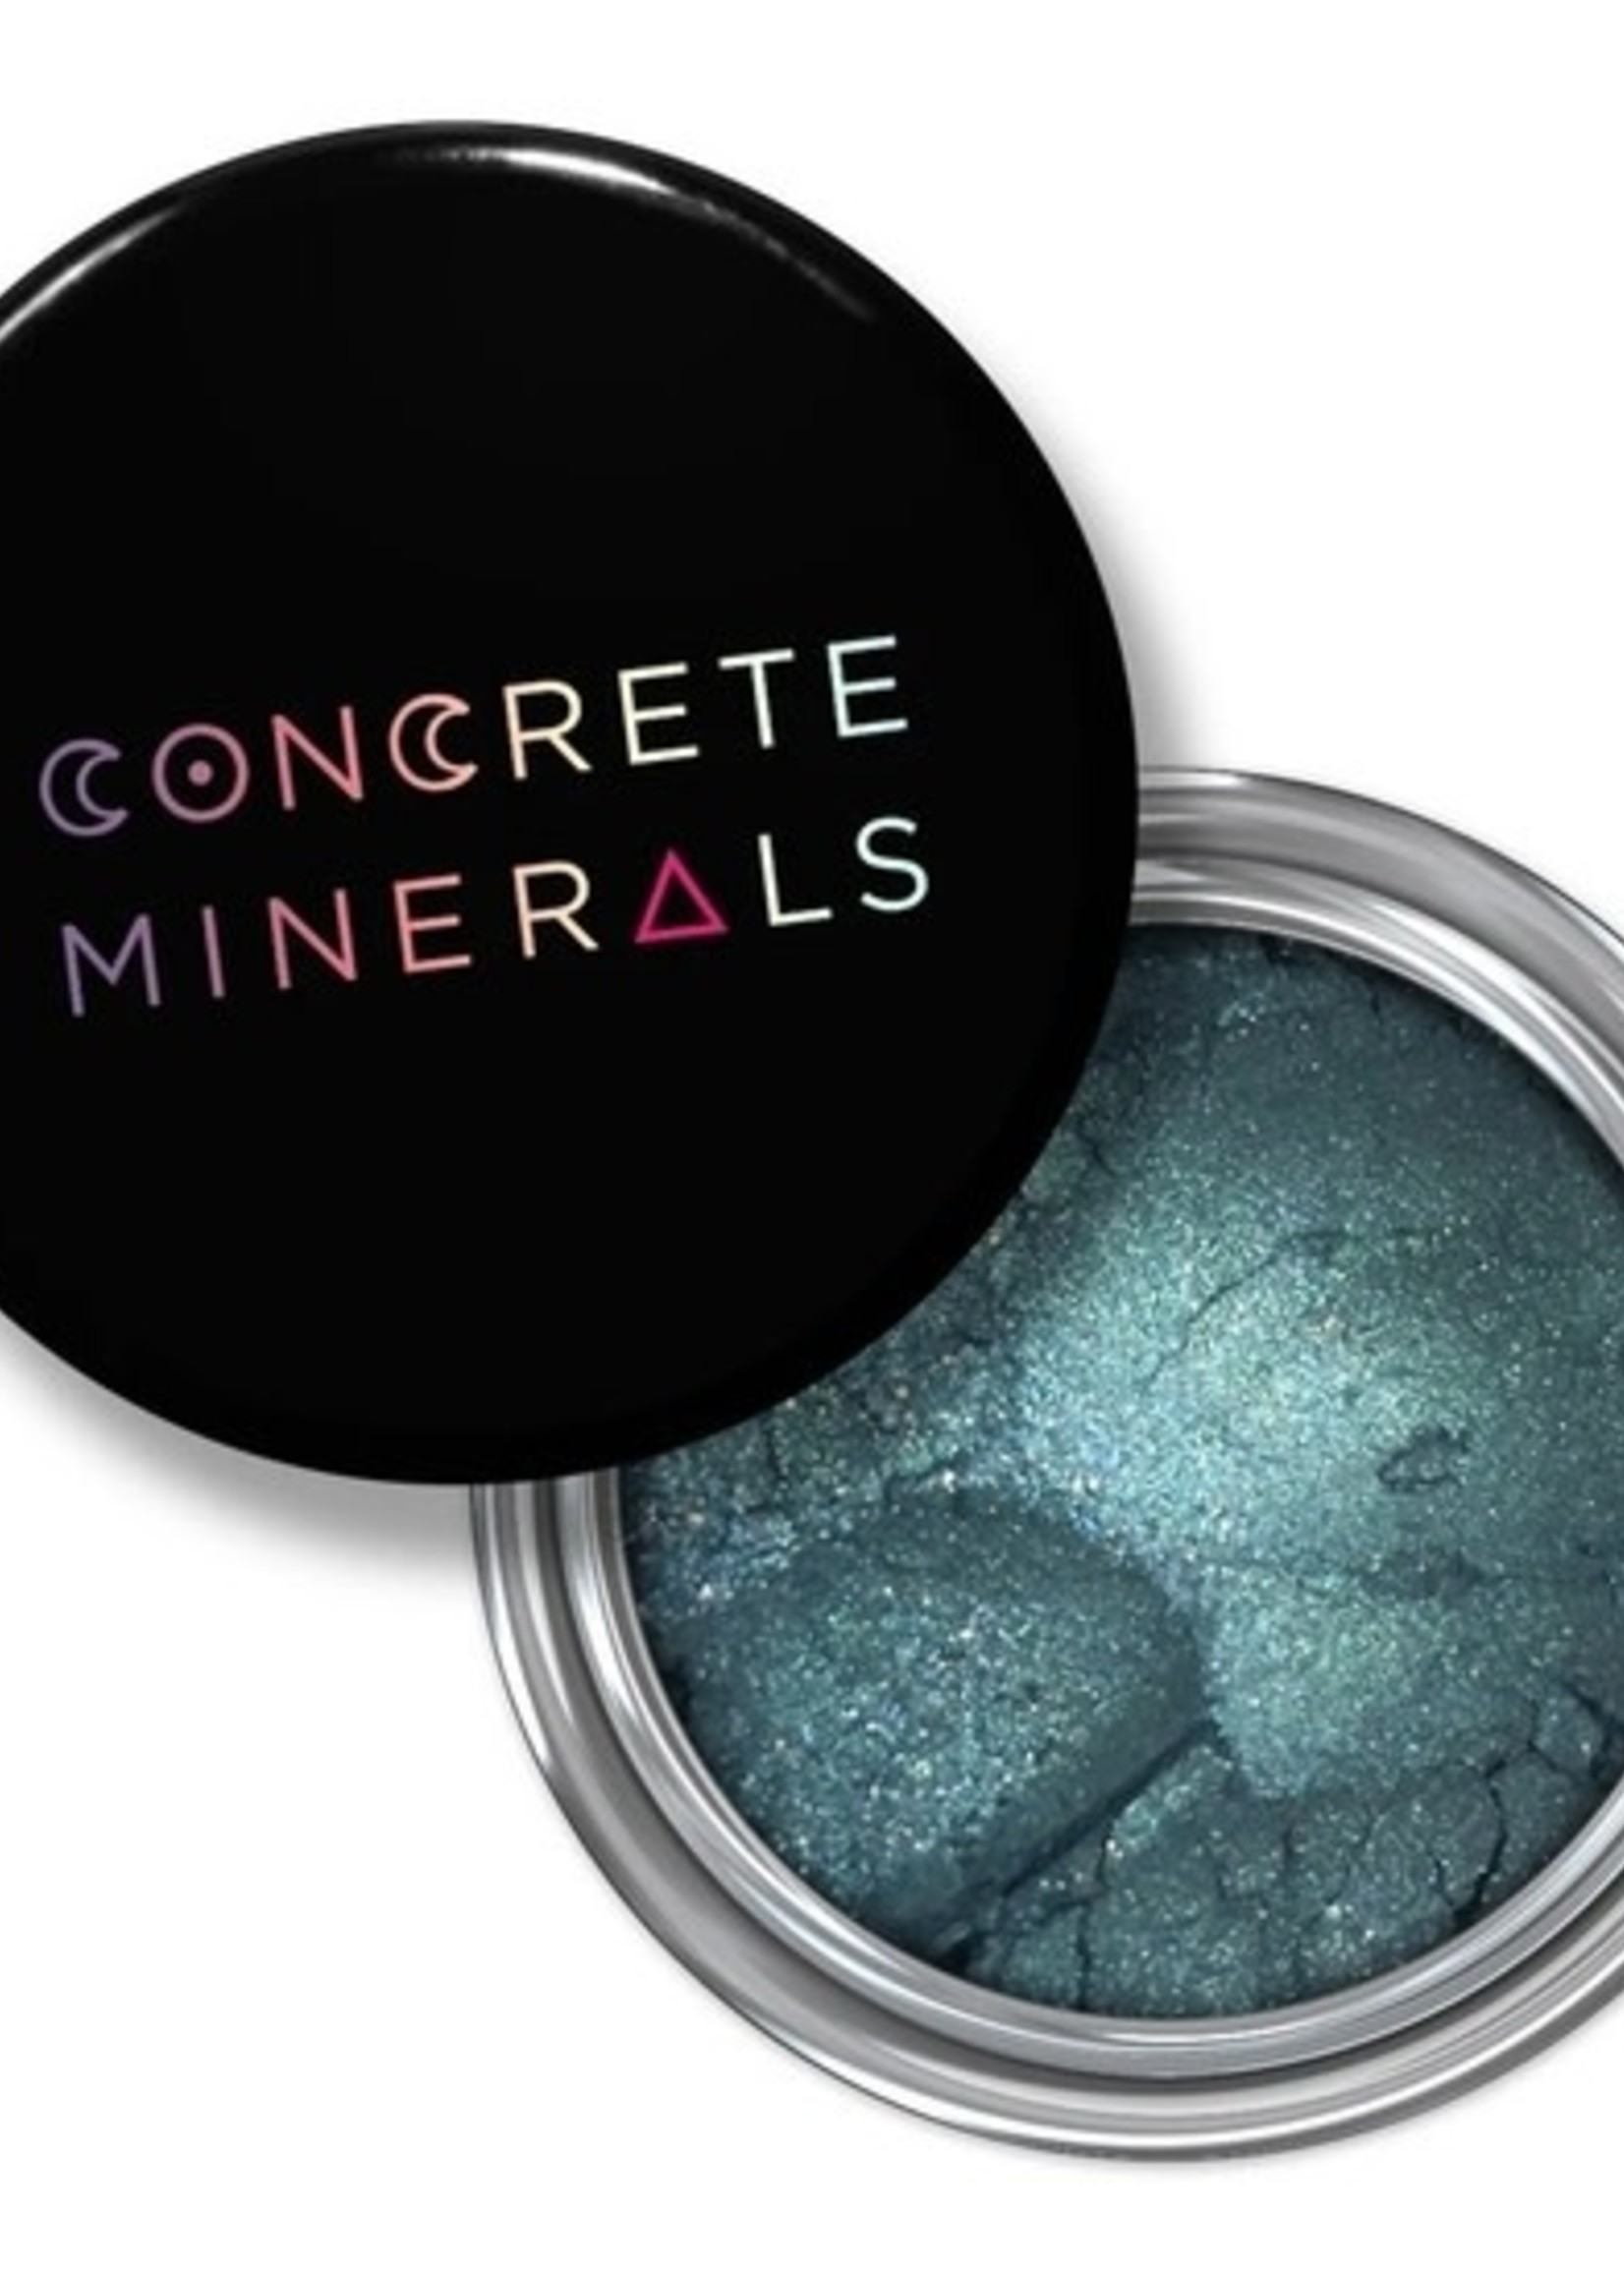 'Temptress' Concrete Minerals Eyeshadow